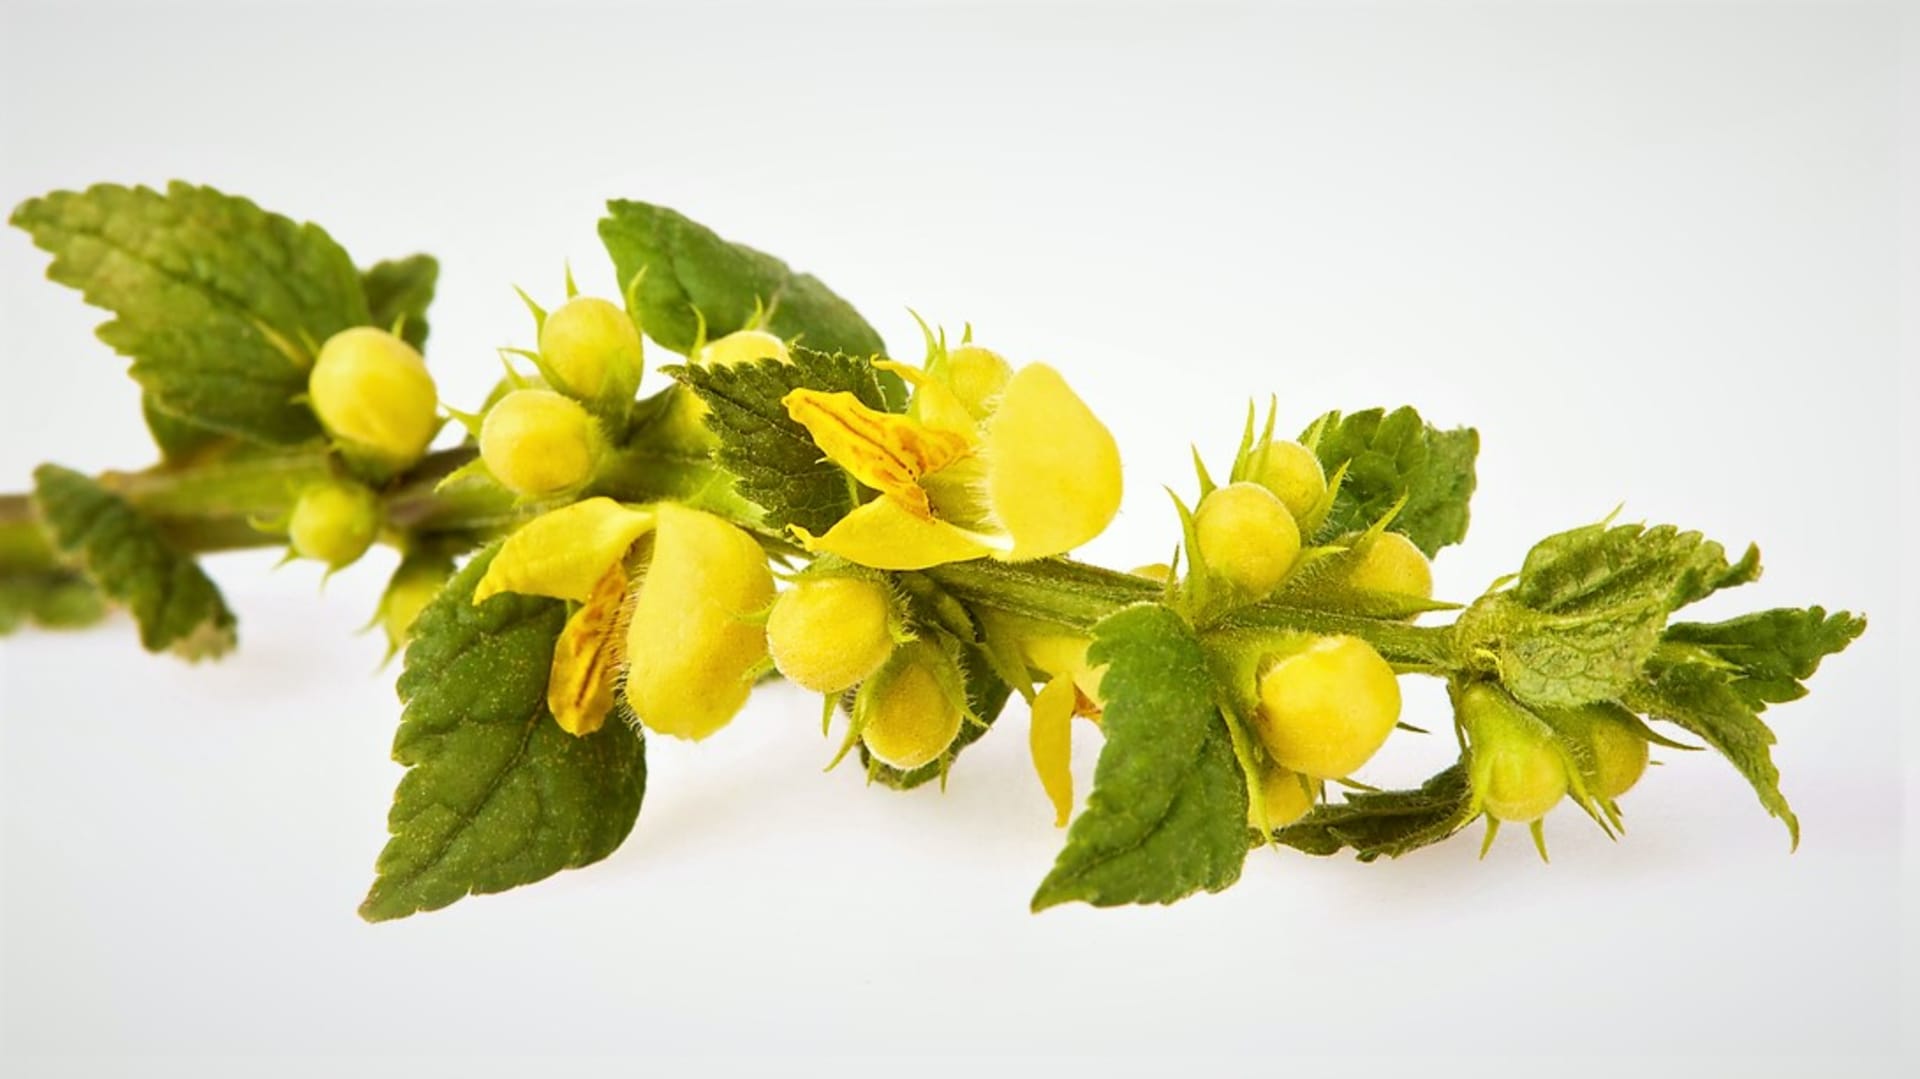 Nejčastěji se sbírají jasně žluté květy a kvetoucí nať, které obsahují nejvíce léčivých látek. I listy a nekvetoucí nať obsahují podobné účinné látky jako květy, jen méně koncentrované.